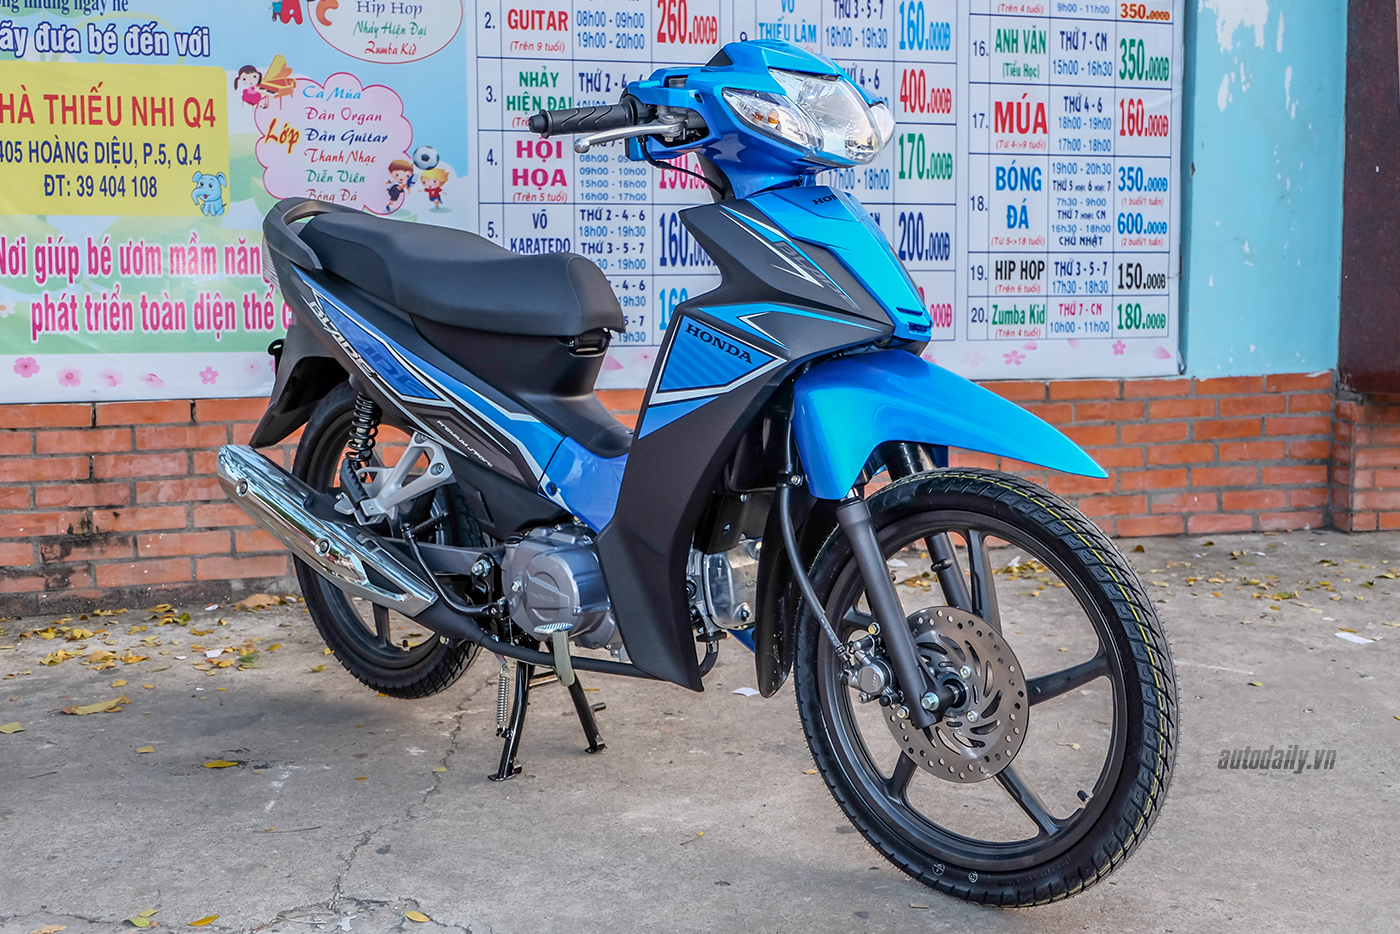 Nhận ngay thẻ điện thoại 600000 đồng khi mua xe máy Honda Việt Nam